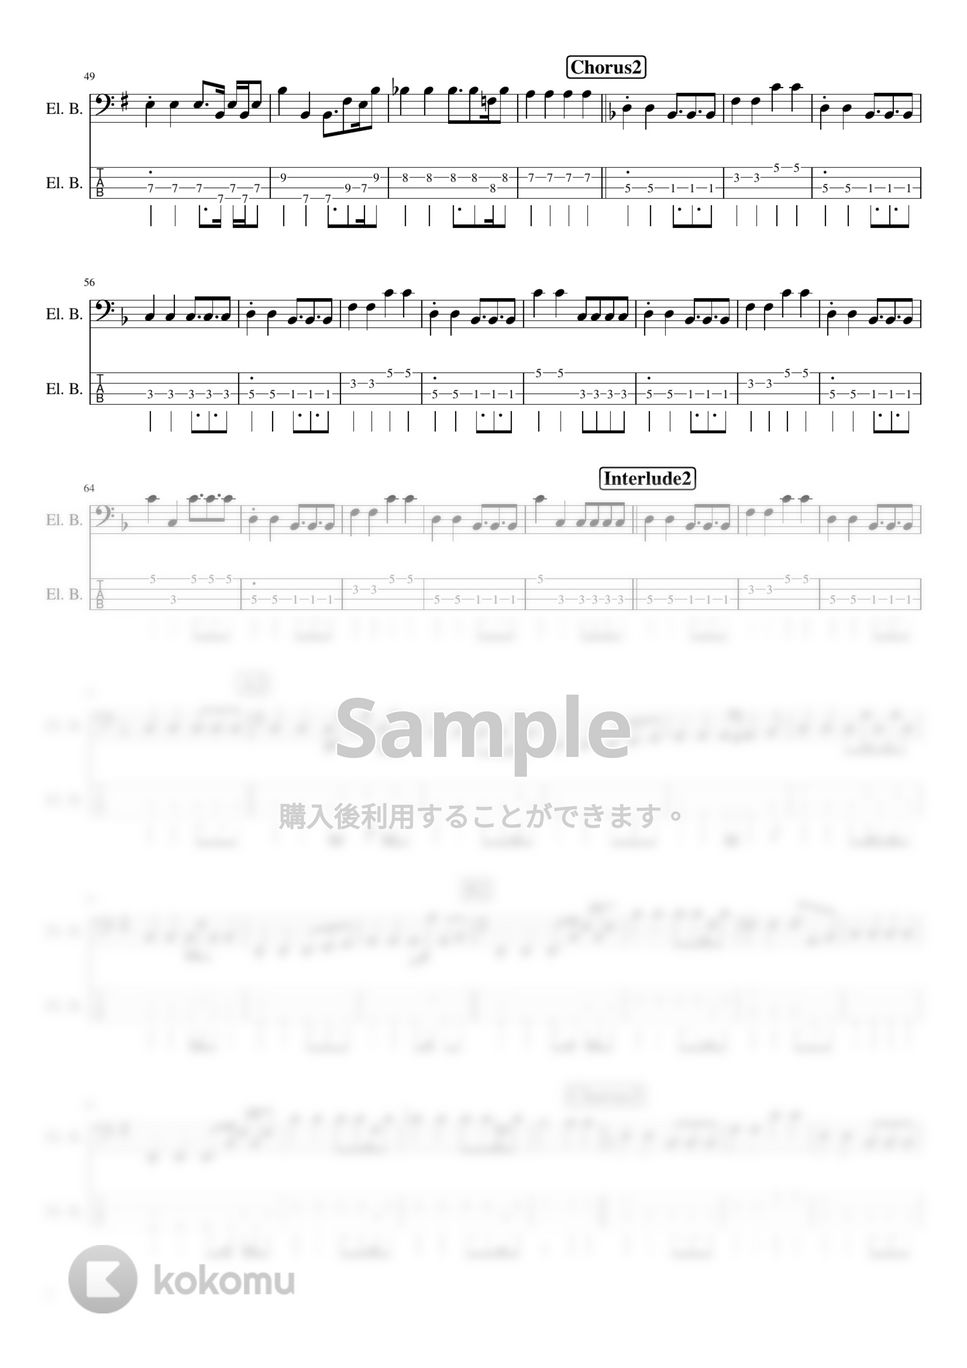 宇多田ヒカル - Beautiful World (ベース / TAB) by TARUO's_Bass_Score